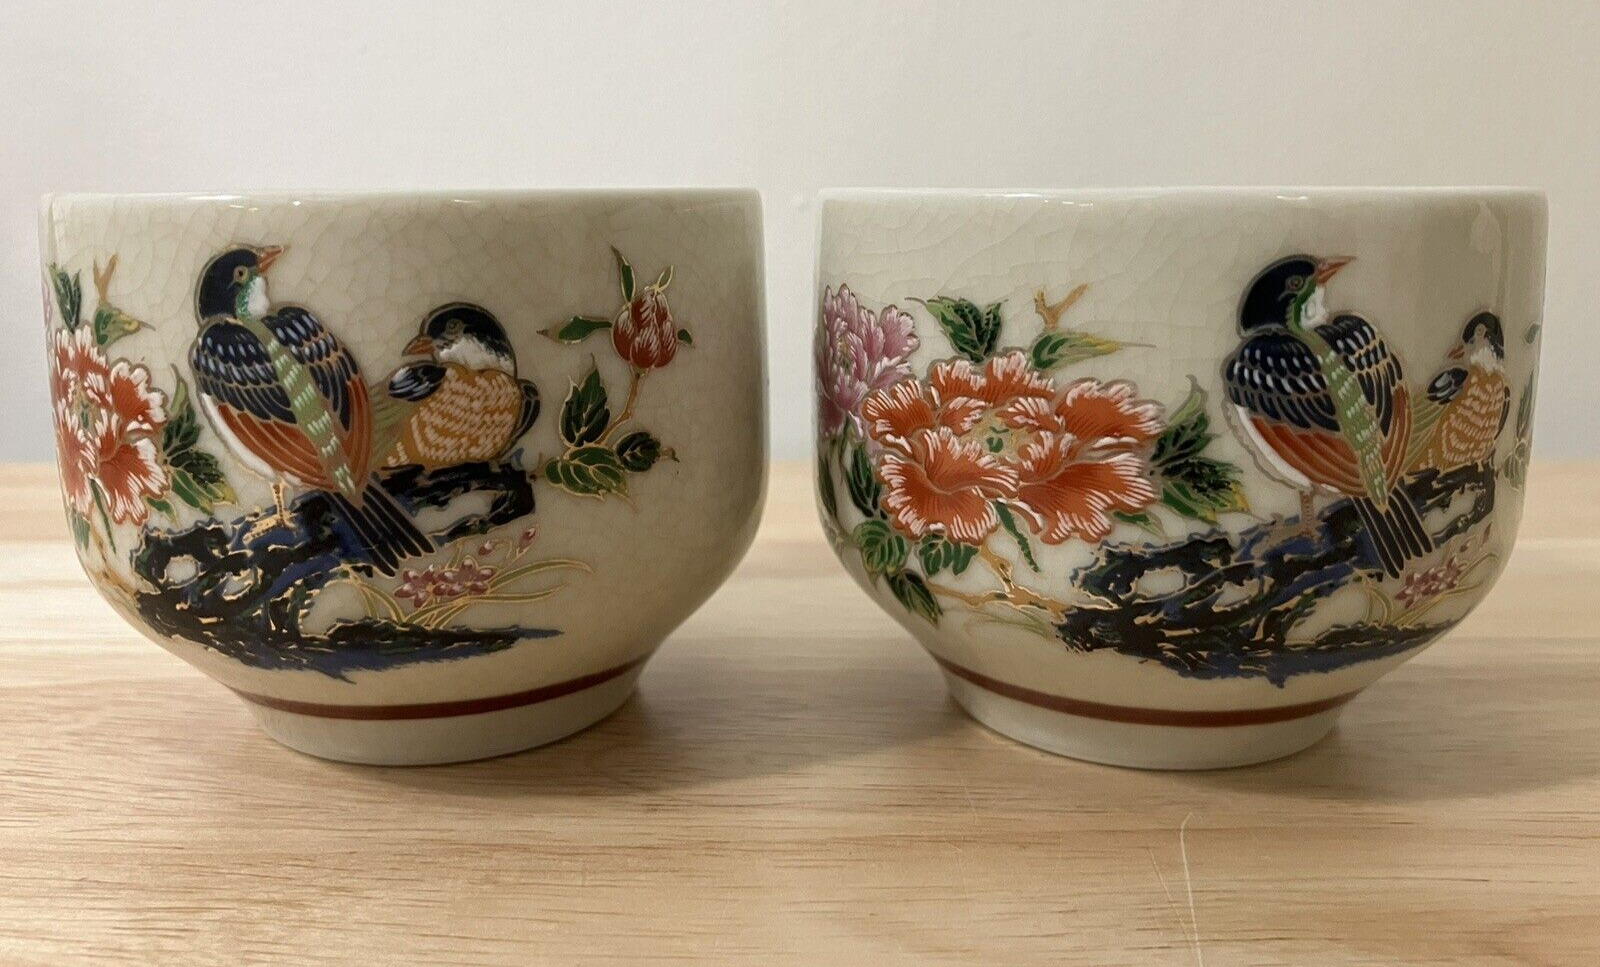 Vintage Sato Gordon Japanese Porcelain Teacups Floral and Bird Design Set of 2